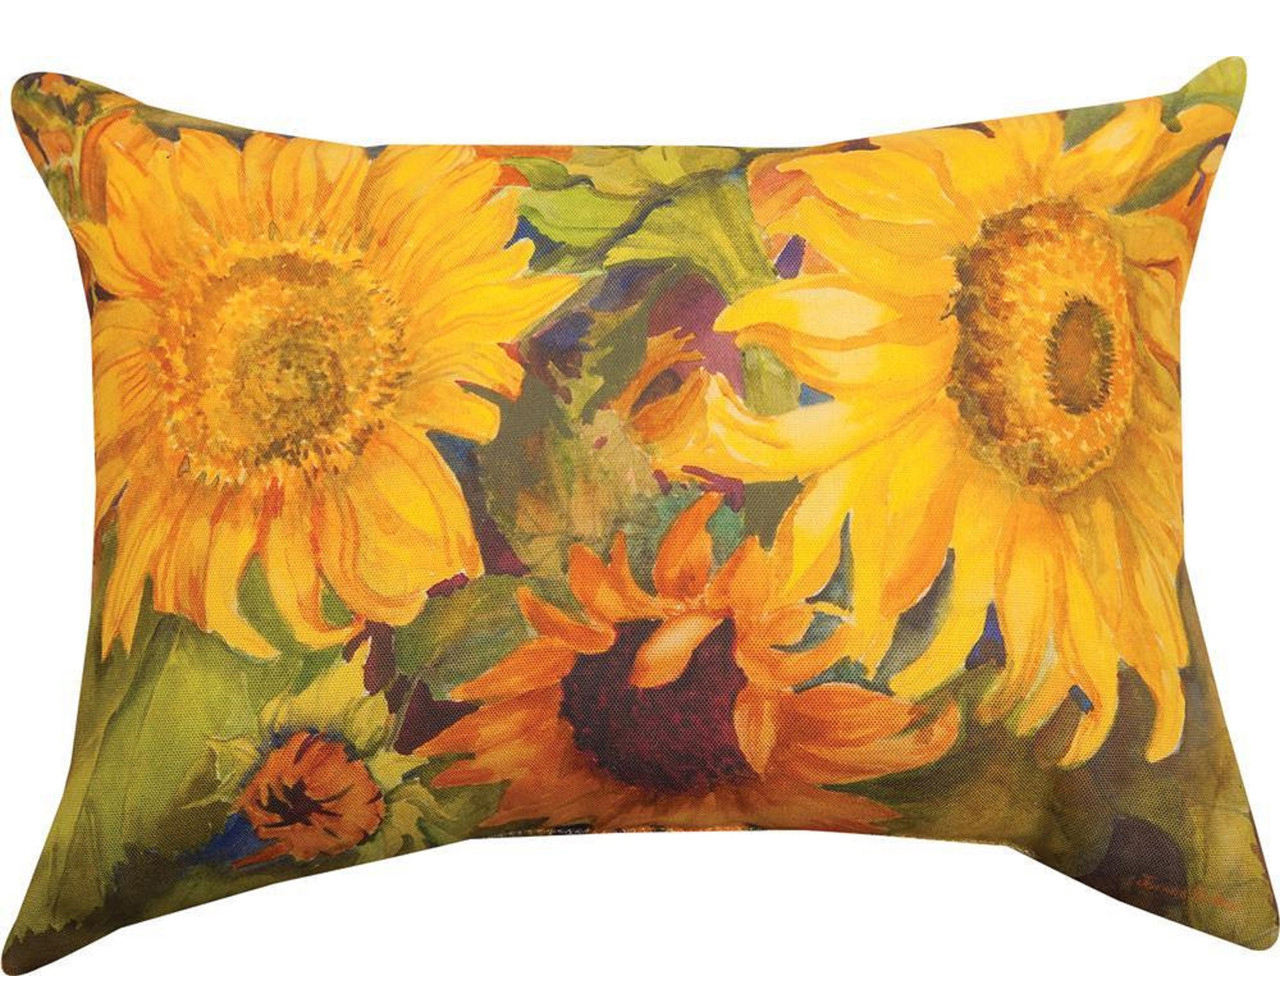 golden yellow rectangular sunflower throw pillow